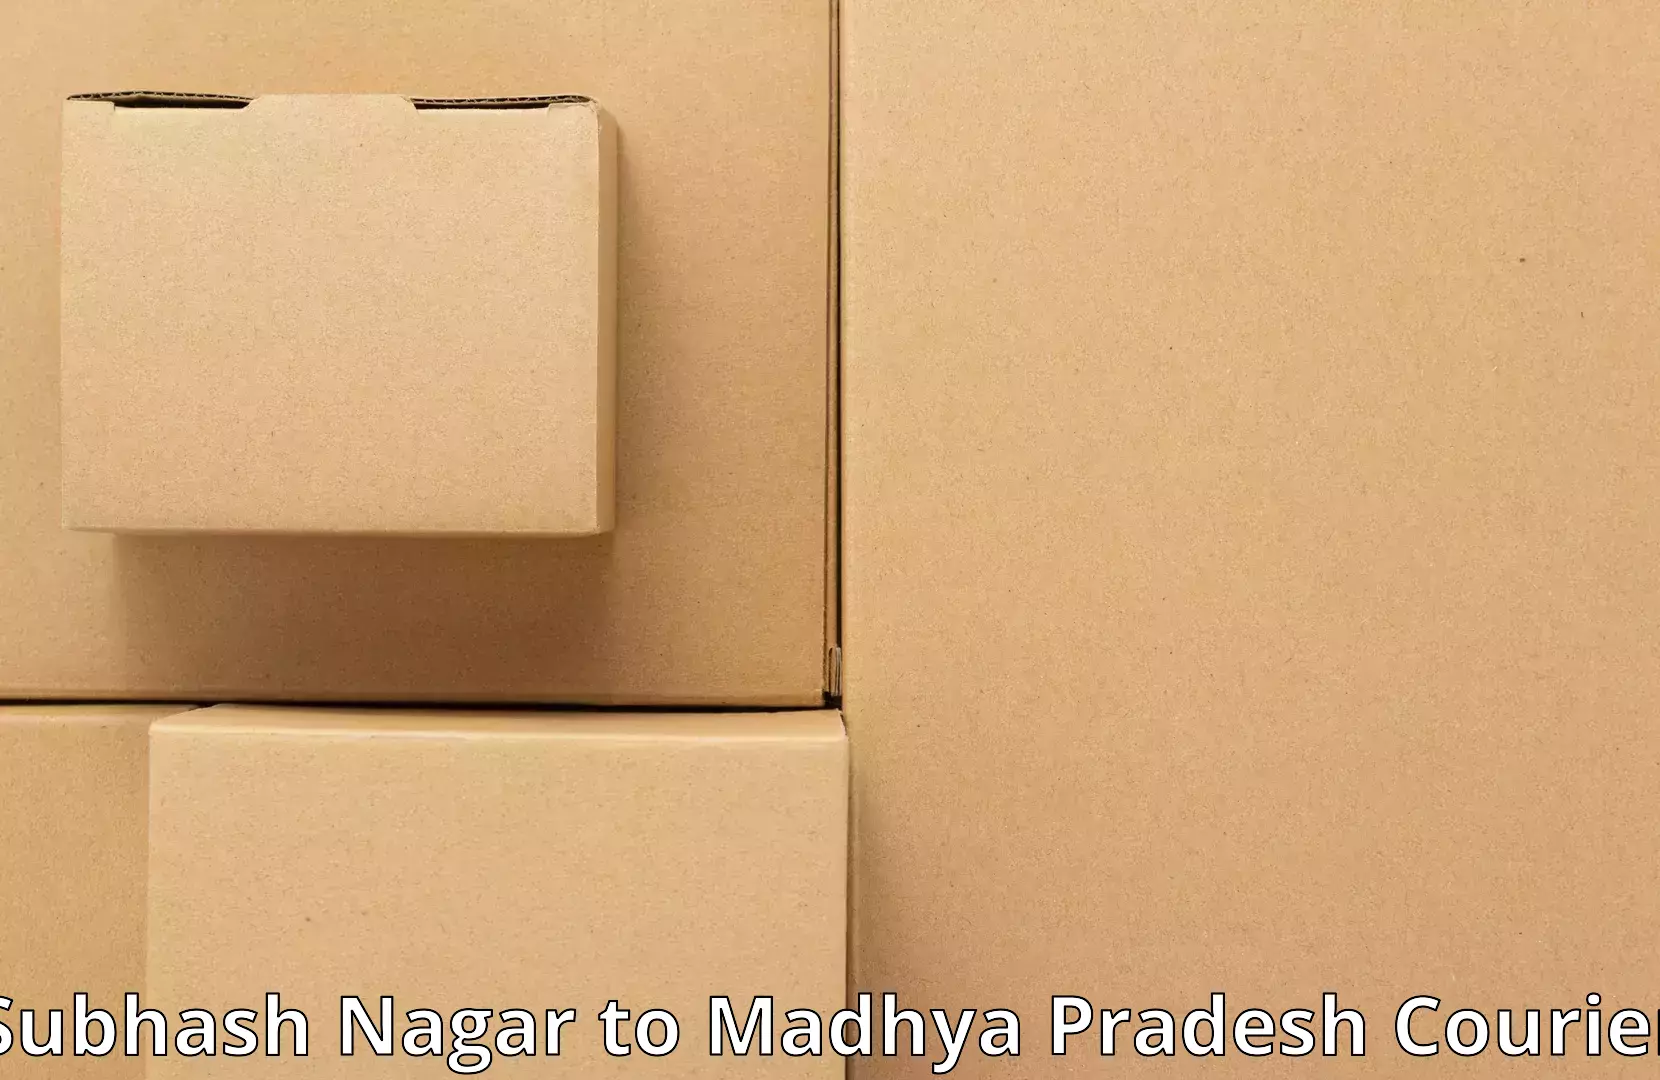 Home relocation experts Subhash Nagar to Madhya Pradesh